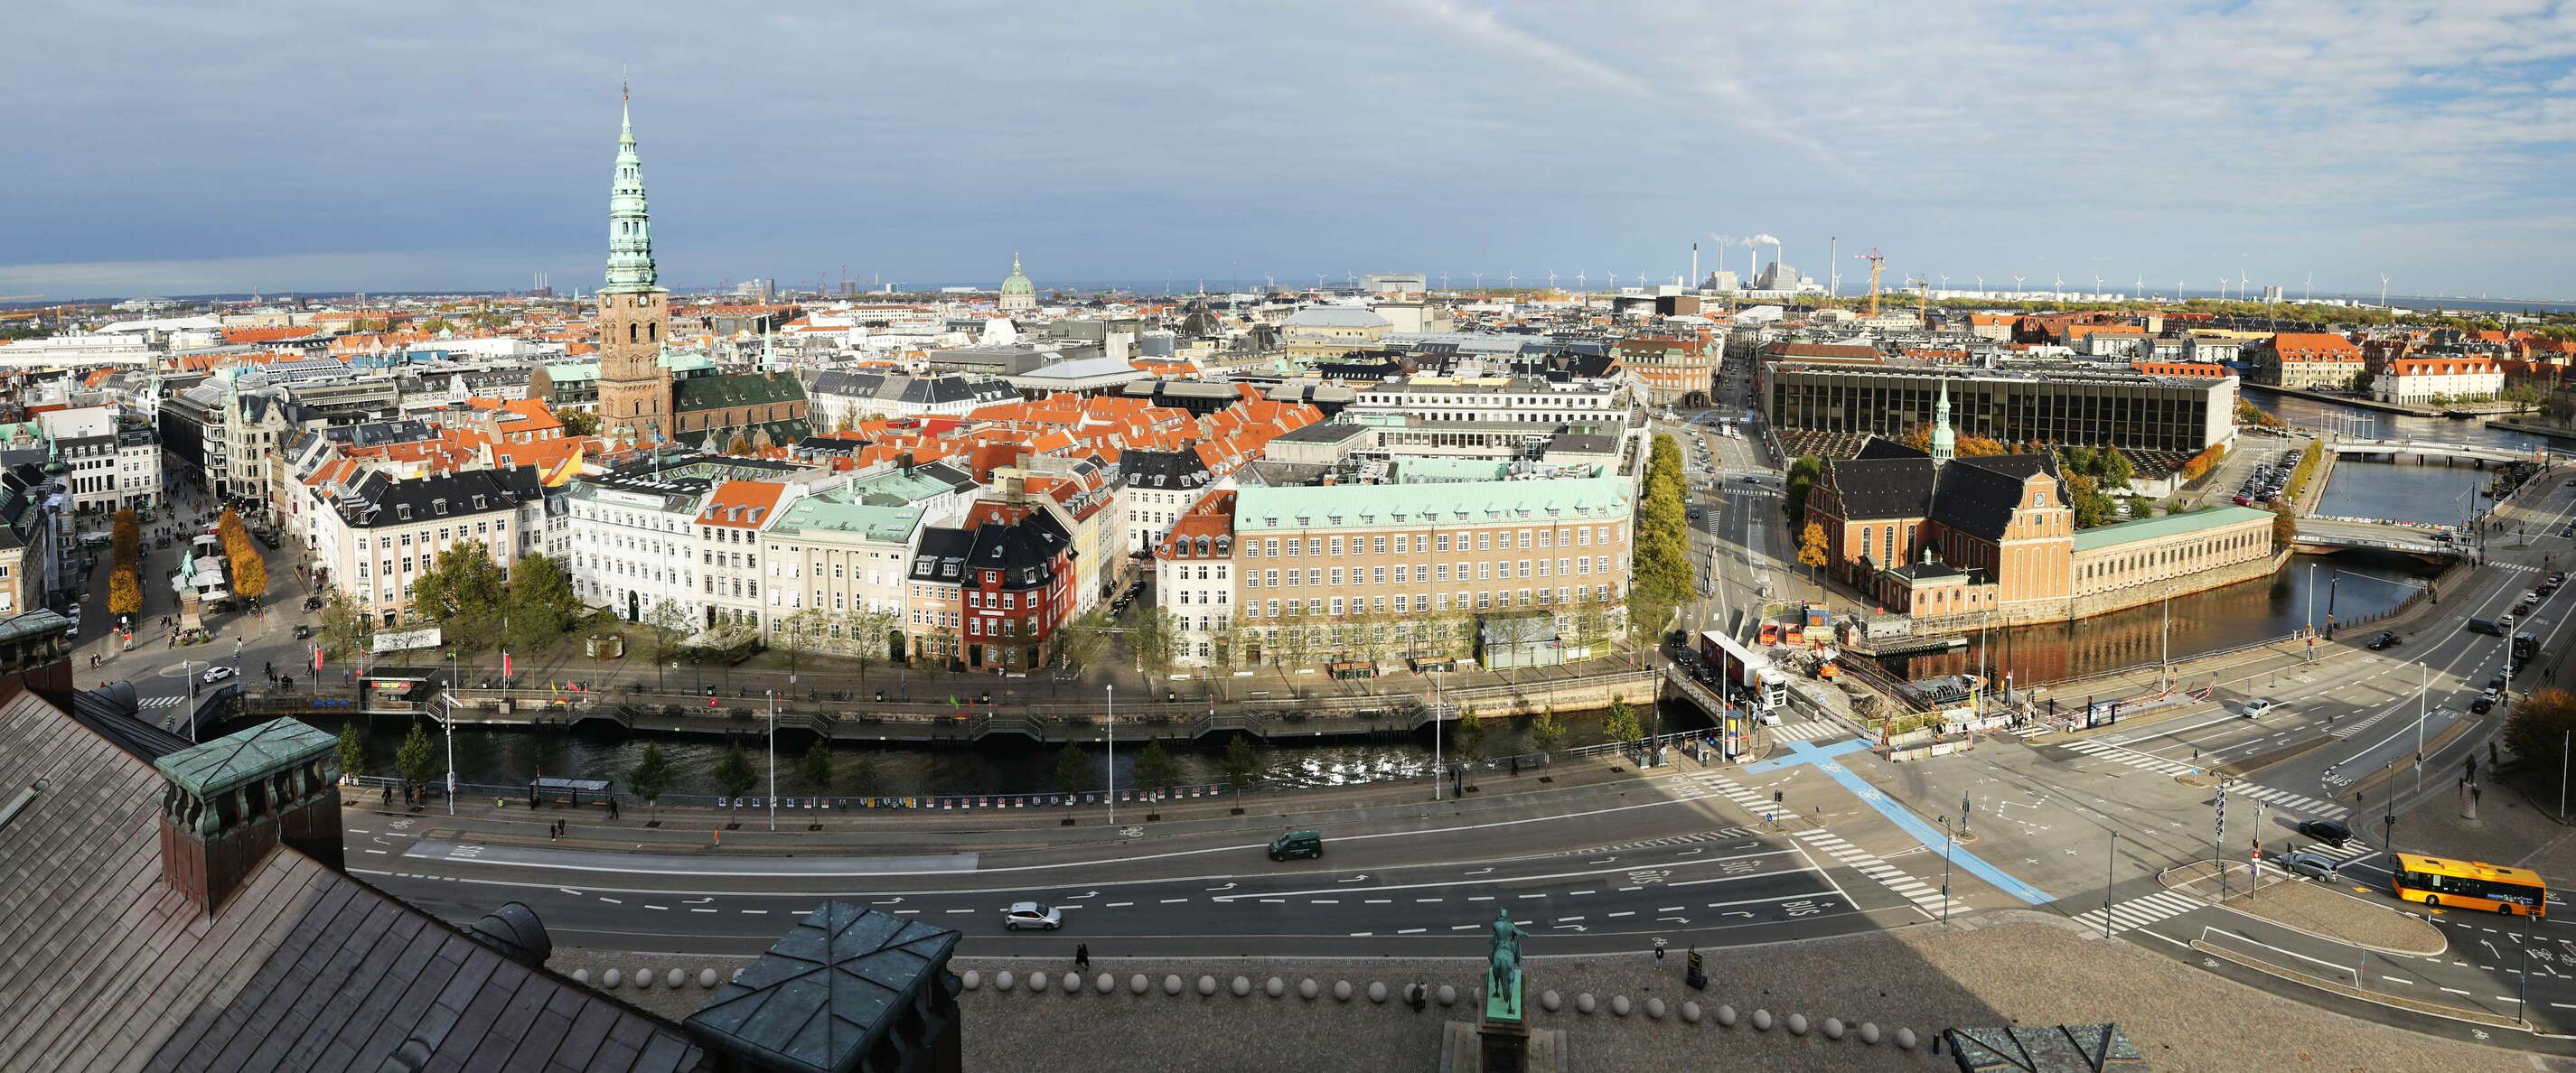 København panorama with Børsgraven